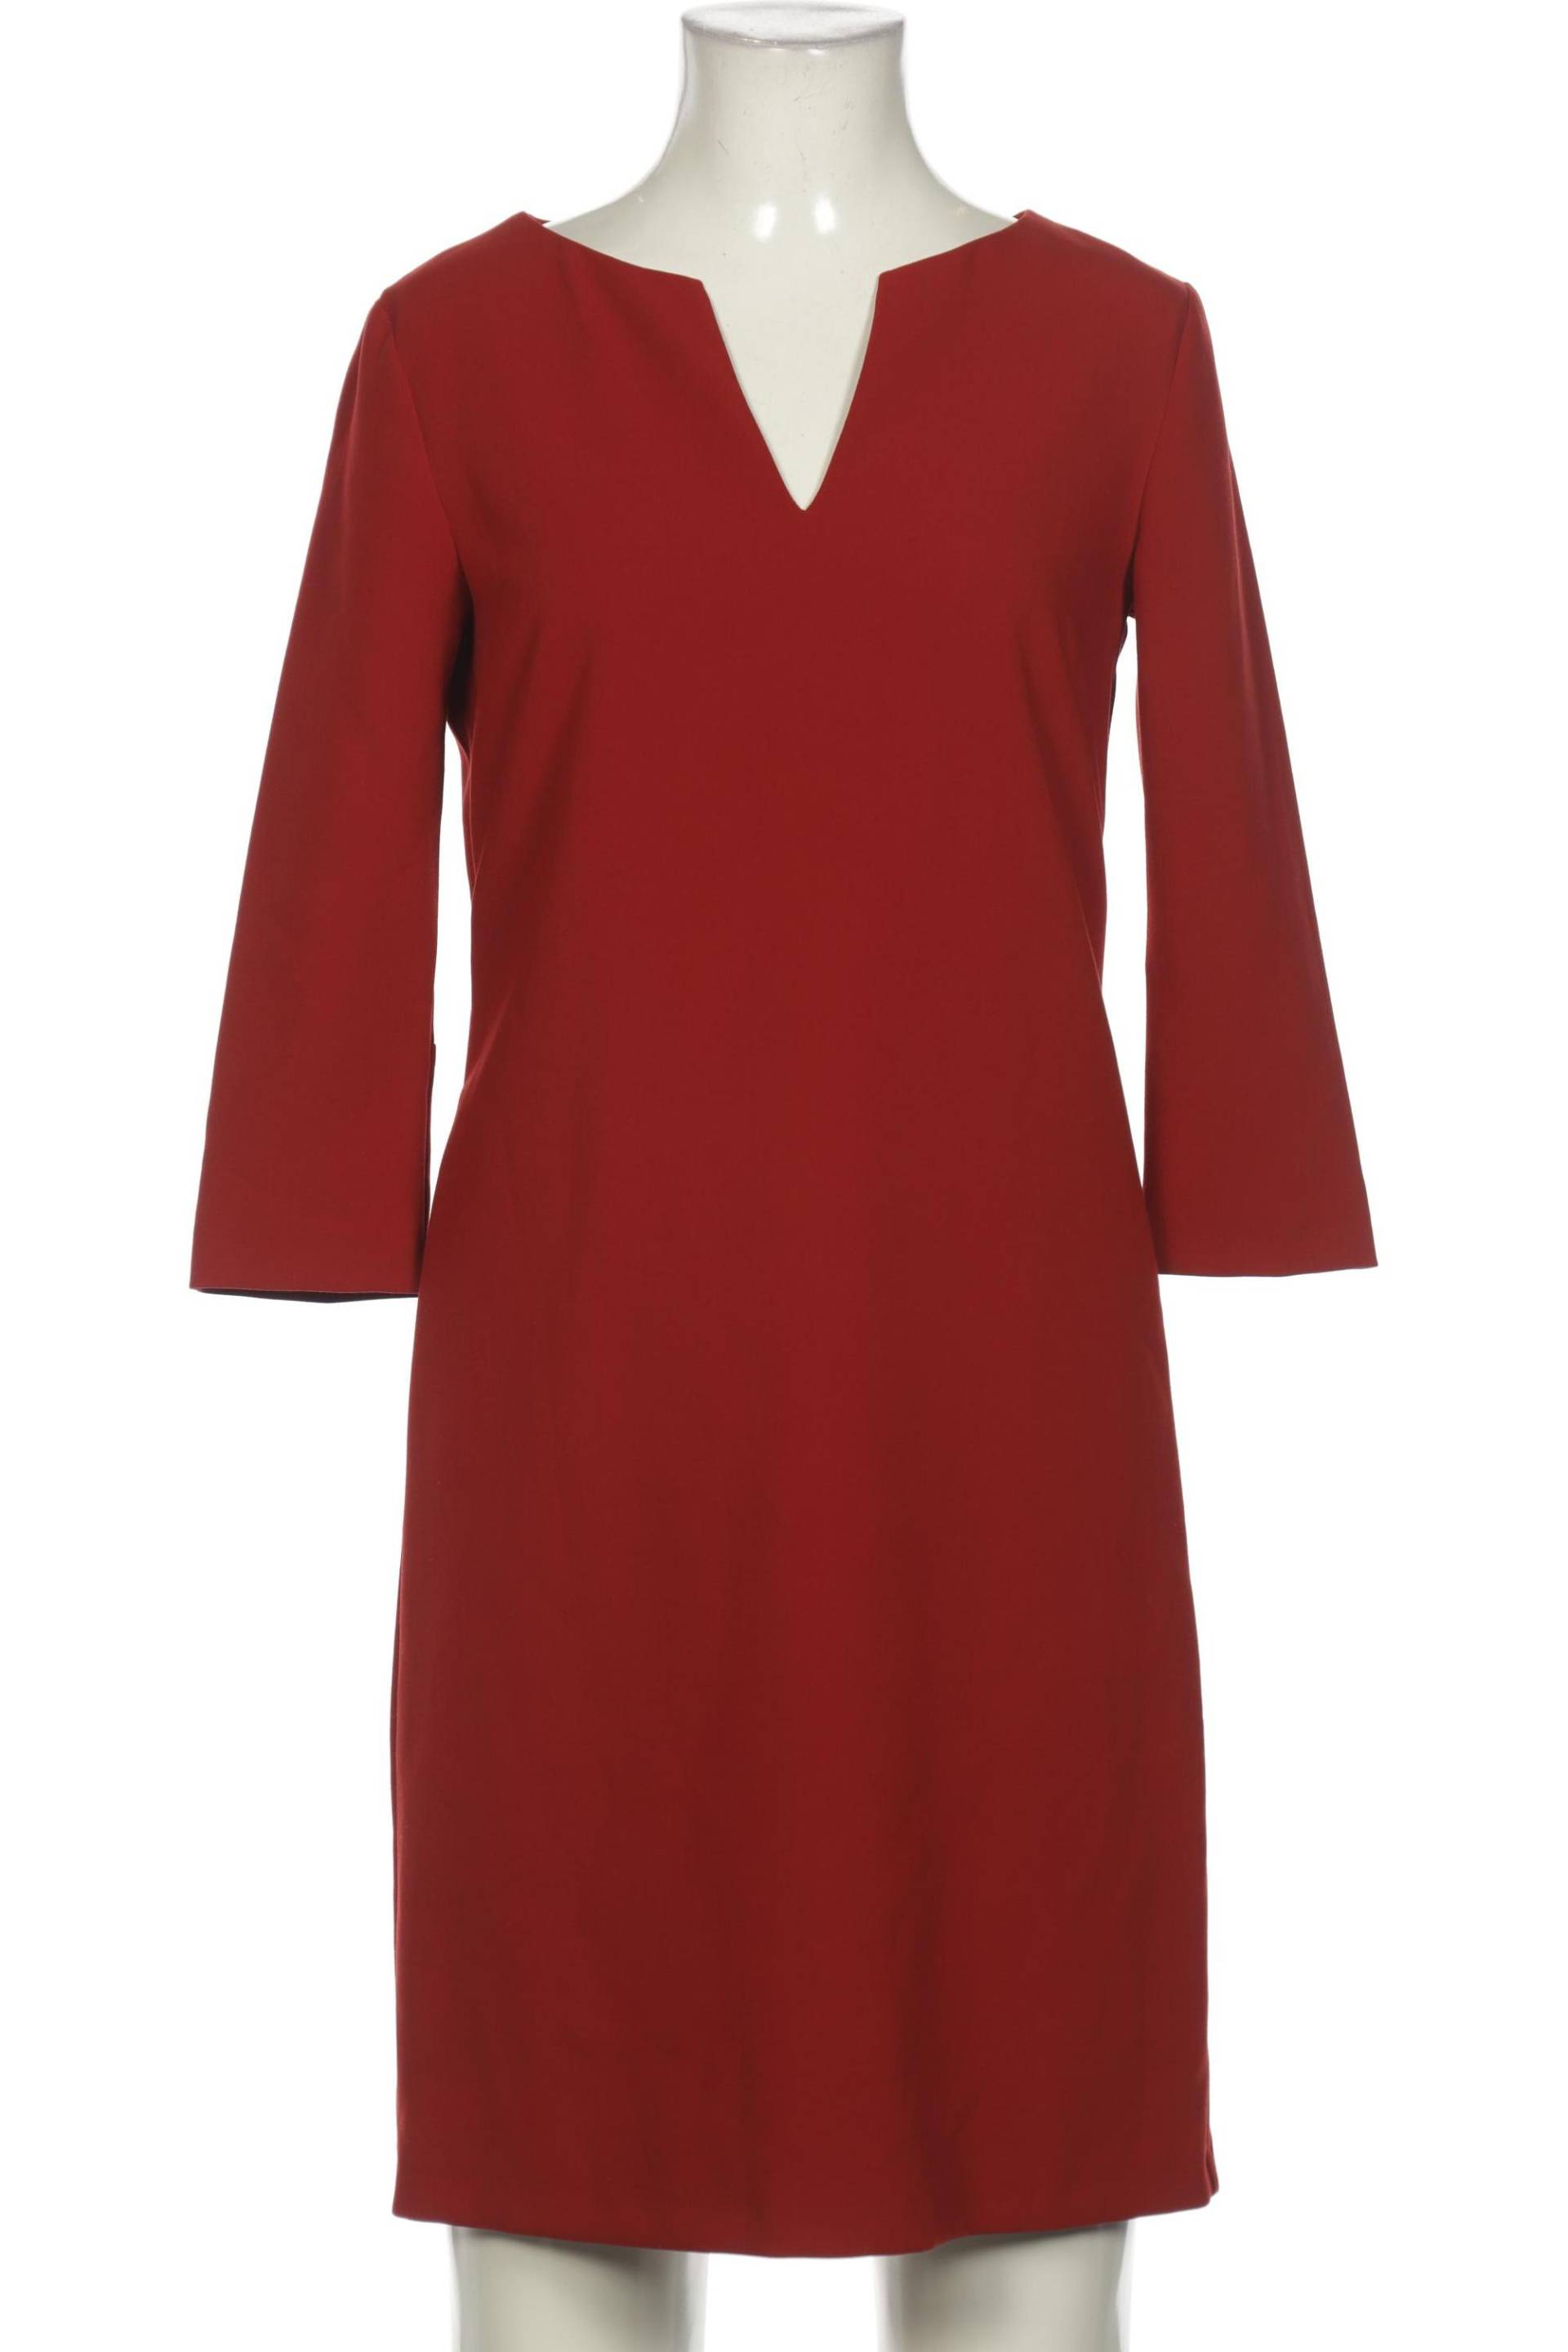 Esprit Damen Kleid, rot, Gr. 34 von Esprit